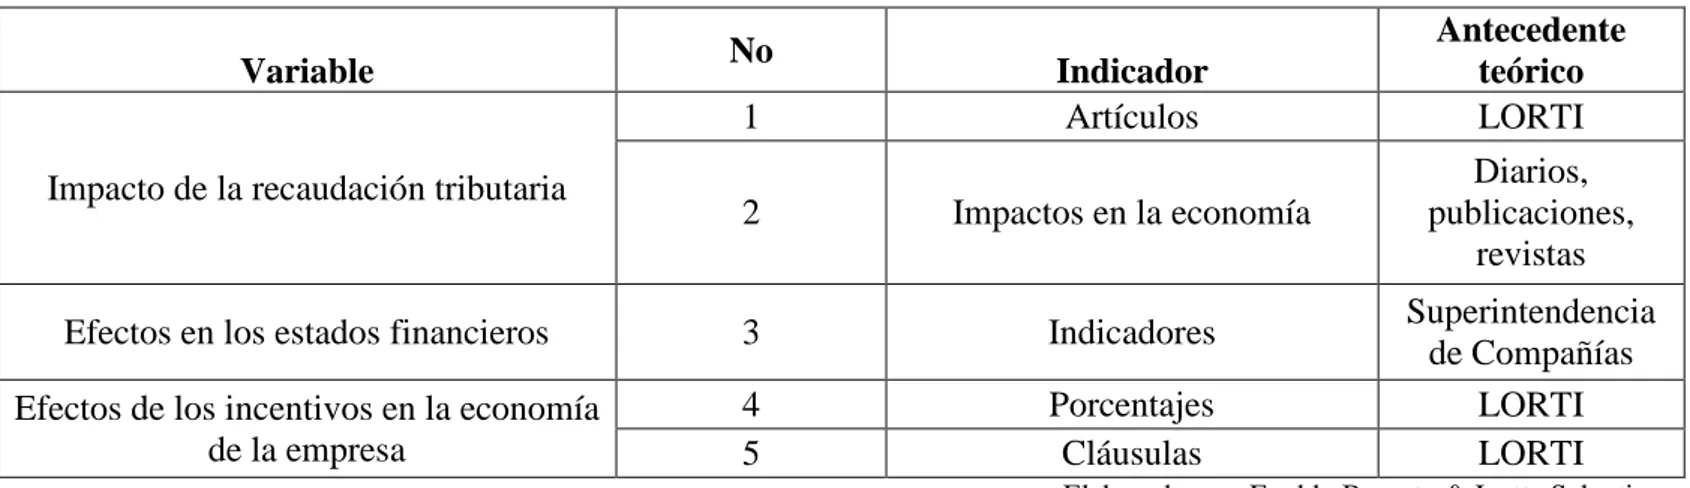 Tabla 3. Categorización de la variable  Categorización de la variable 